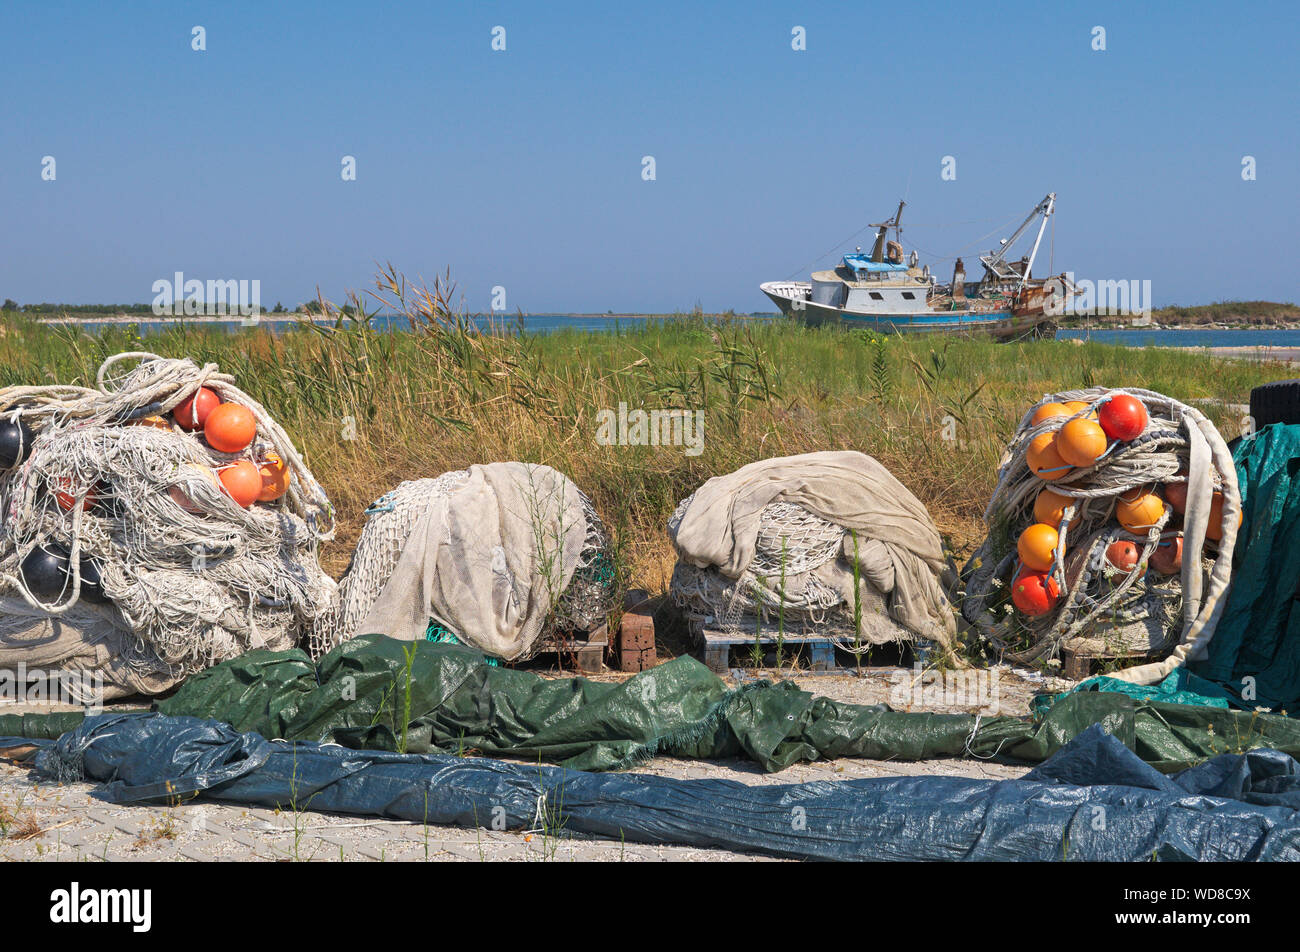 Fischernetze mit Schwimmern und ruinierte Boot, Pila, Po Delta Regional Park, Region Venetien, Italien Stockfoto